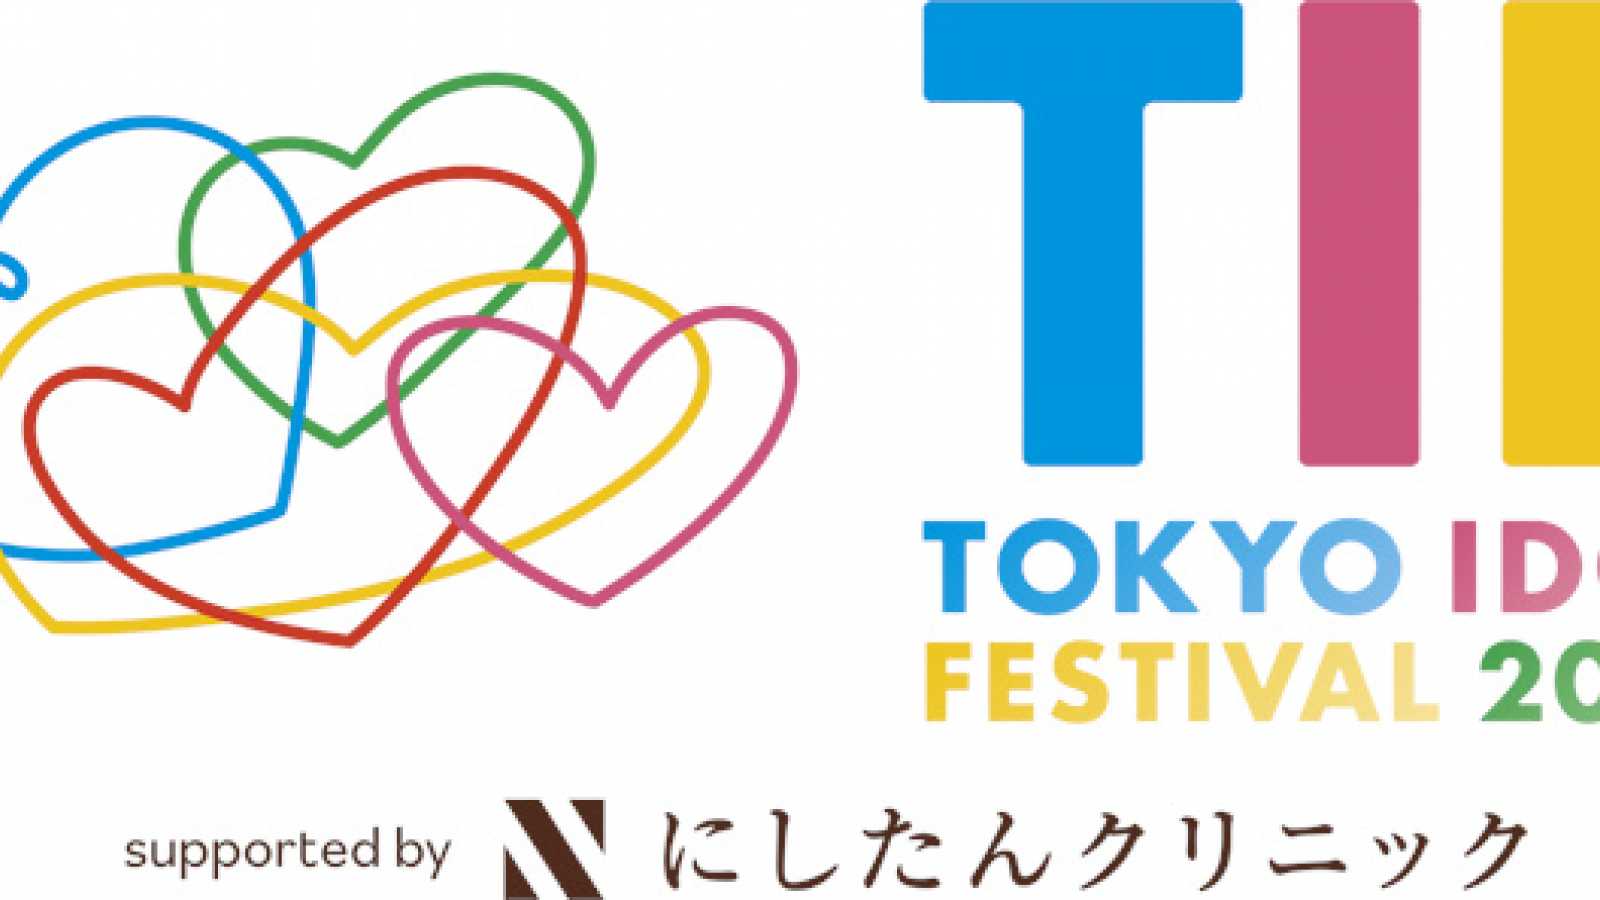 Erste Darsteller für "TOKYO IDOL FESTIVAL 2022" bekannt gegeben © TOKYO IDOL FESTIVAL 2022 all rights reserved.